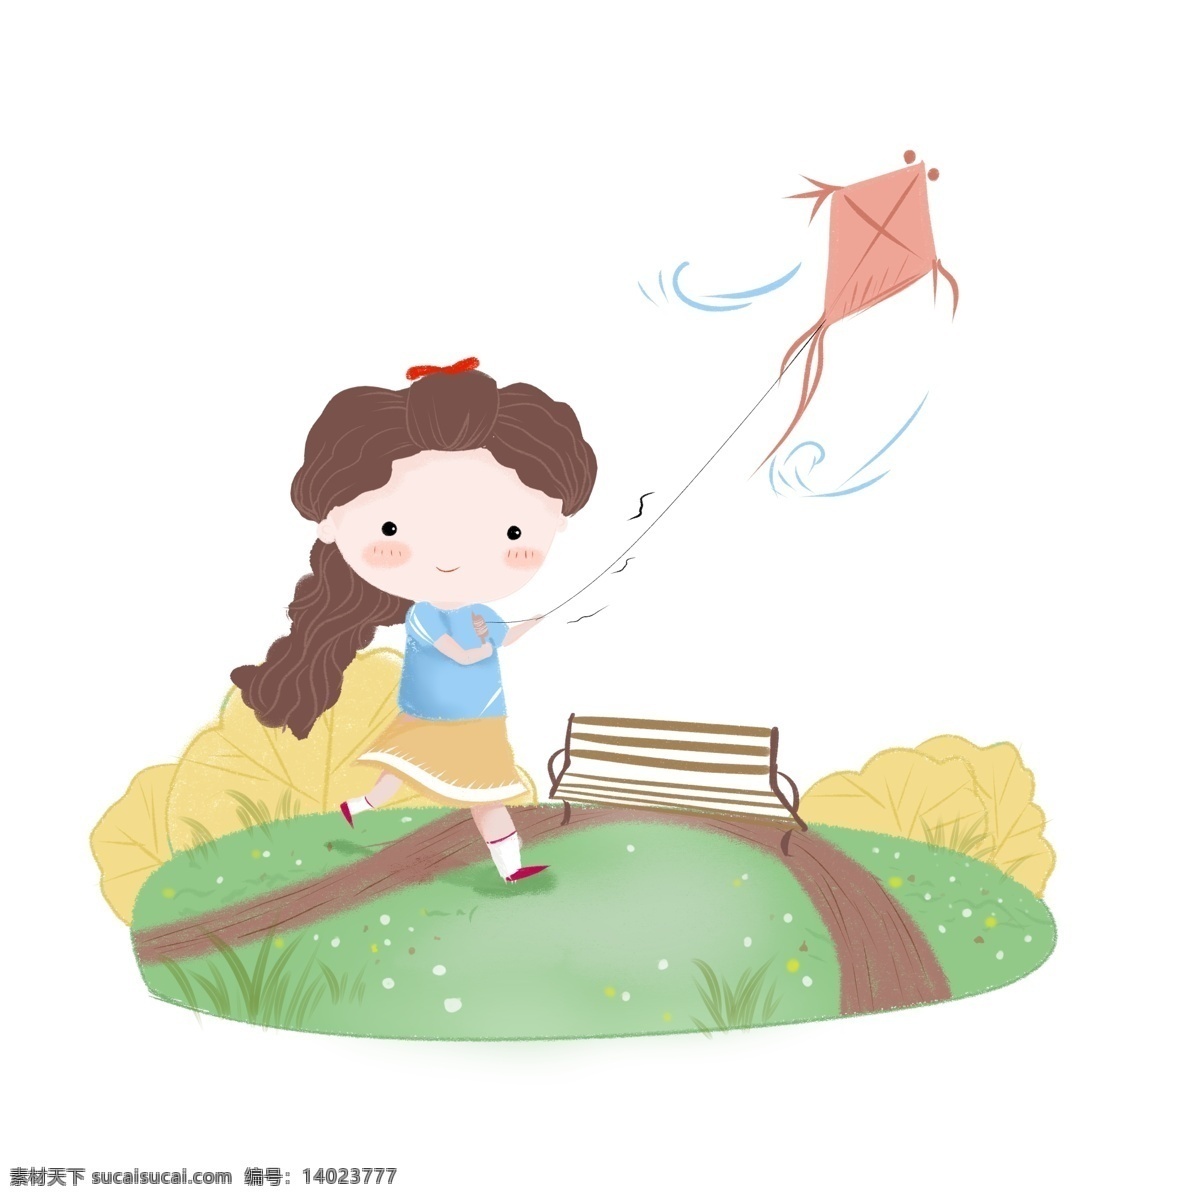 花园 放风筝 可爱 卡通 女孩 秋天 郊游 春天 踏青 草地 人物 手绘 运动女孩 活力 活泼